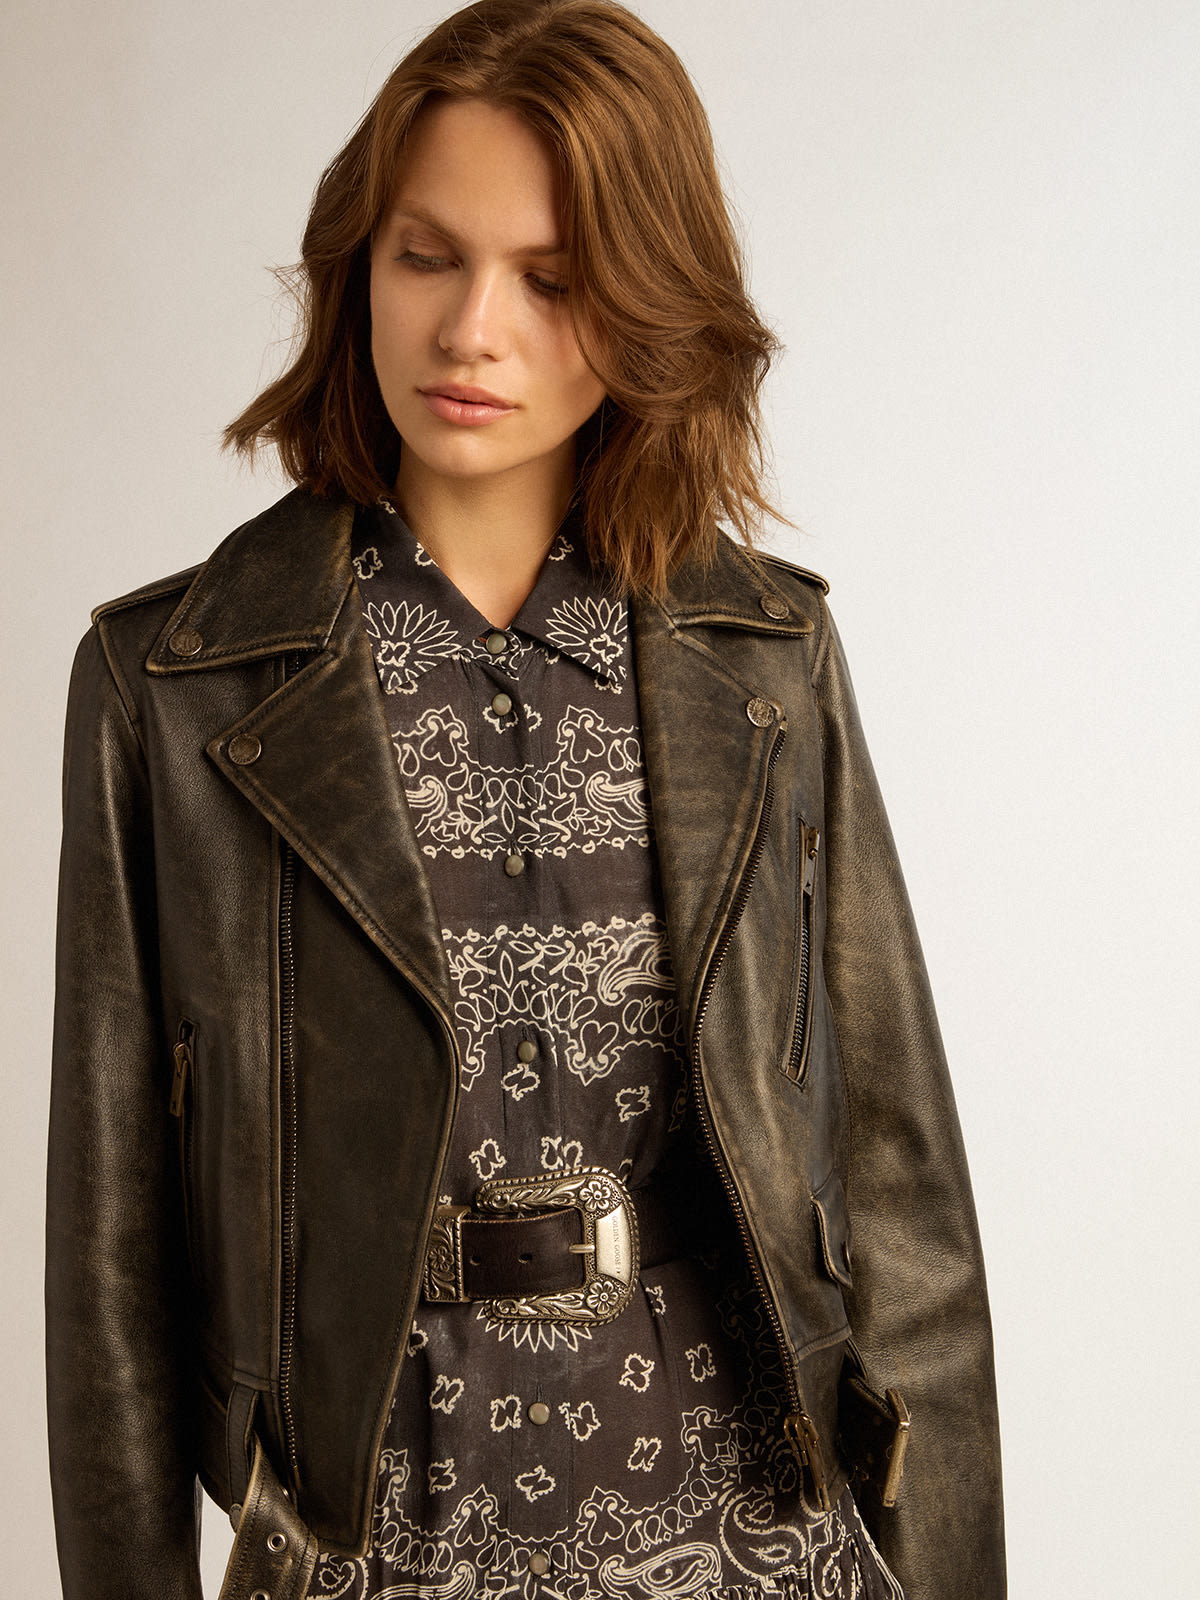 Golden Goose - Women’s biker jacket in distressed leather in 